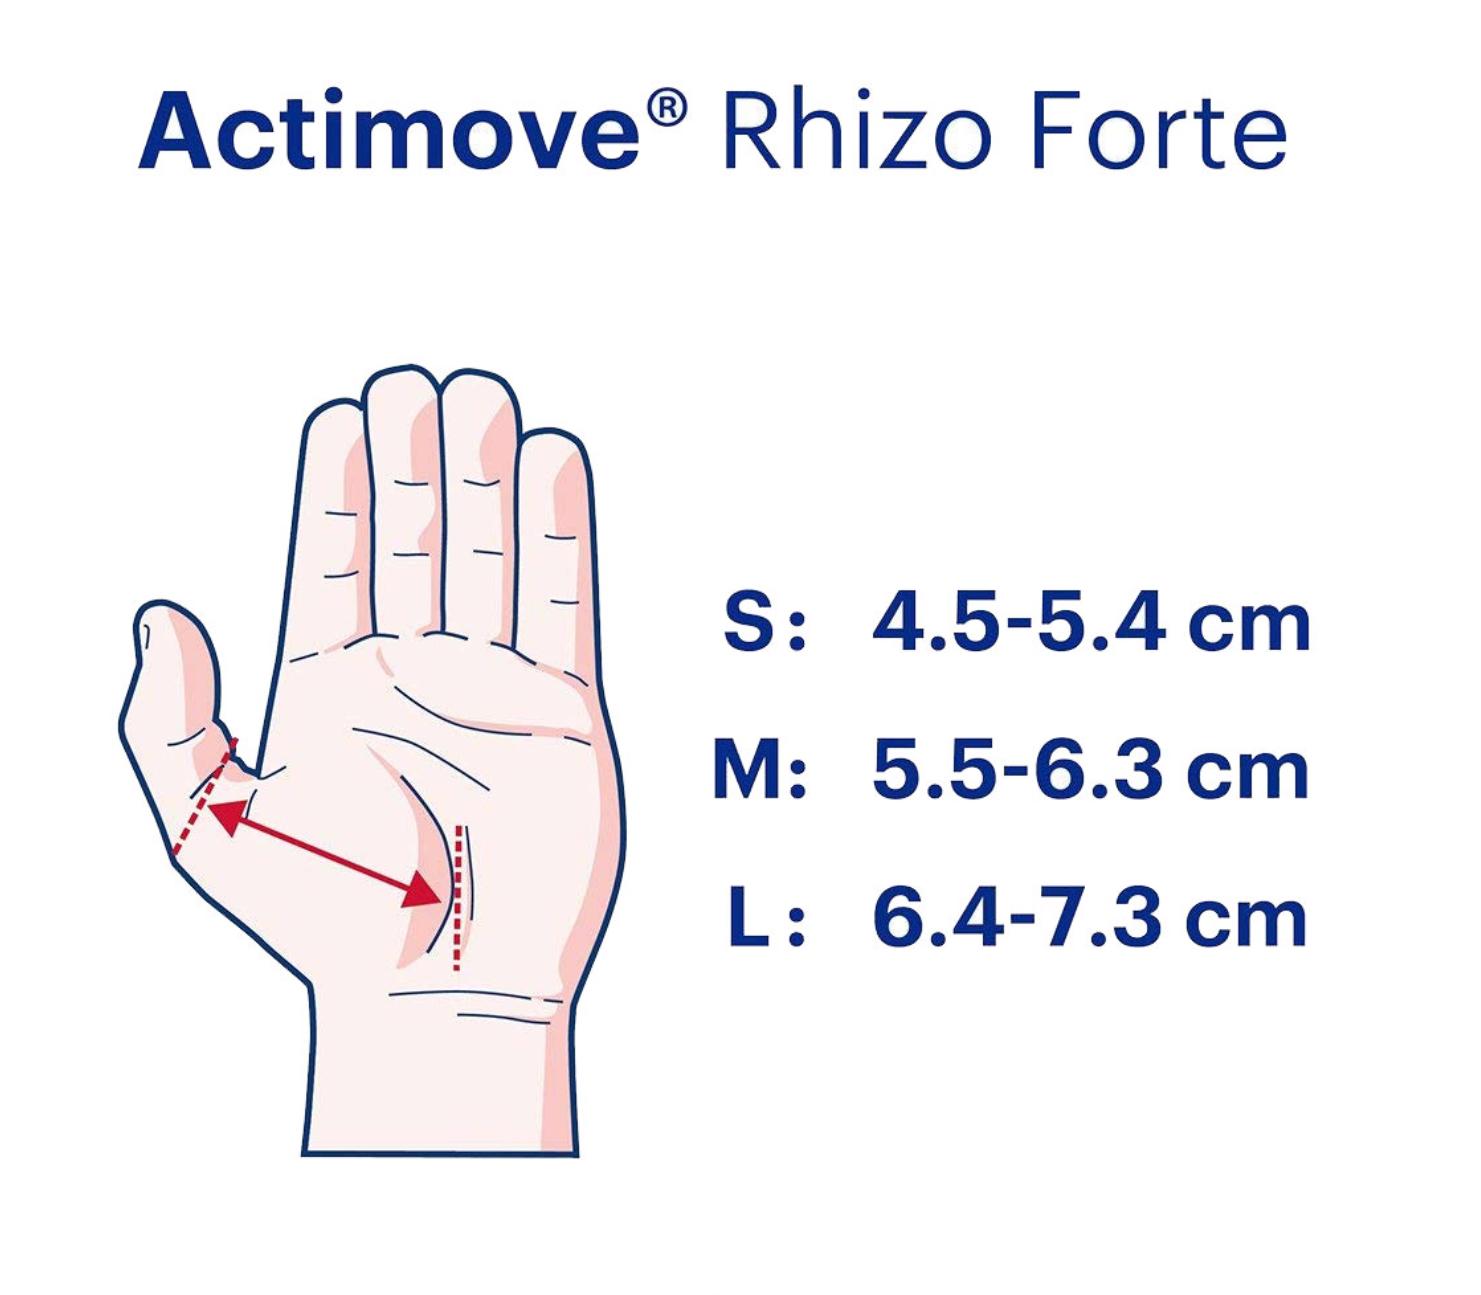 ACTIMOVE RHIZO FORTE L SX